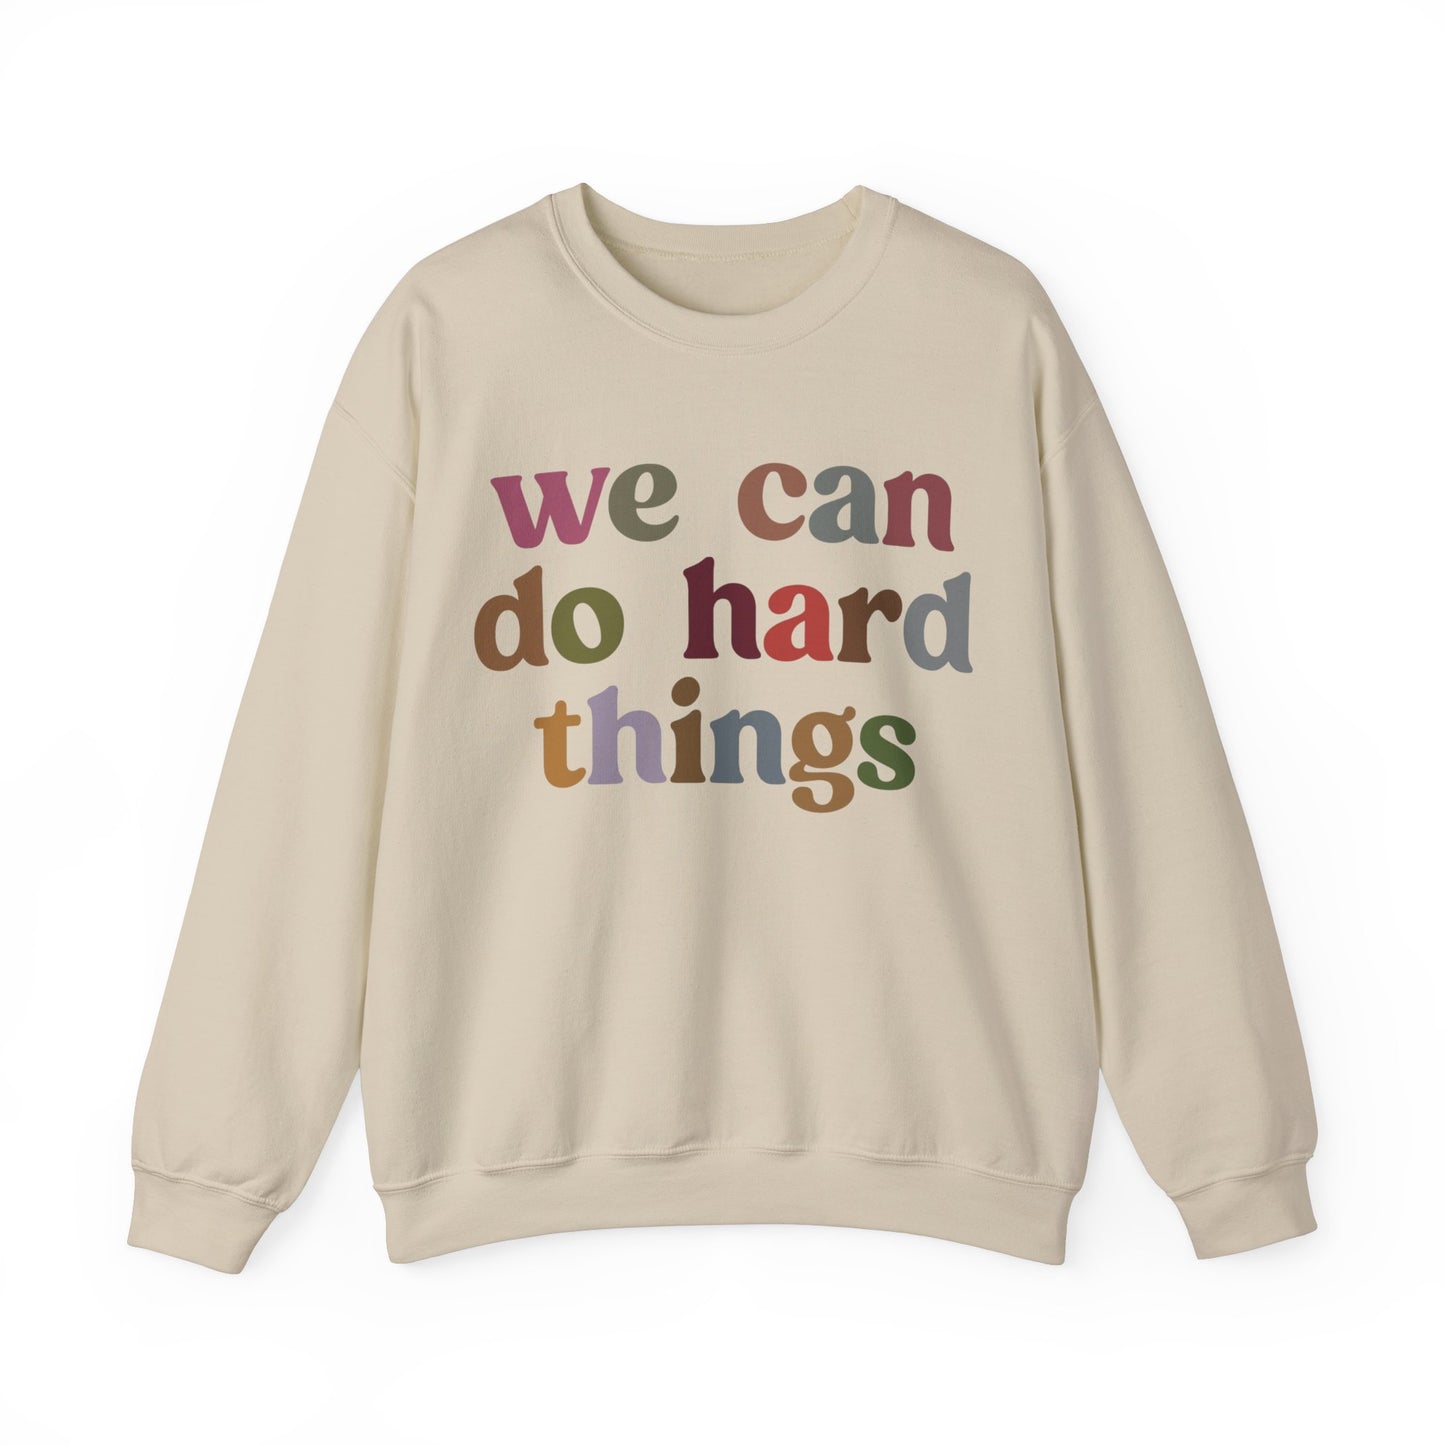 We Can Do Hard Things Sweatshirt, Take a Risk Sweatshirt, Strive Hard, State Testing Sweatshirt, Inspirational Sweatshirt for Women, S1467